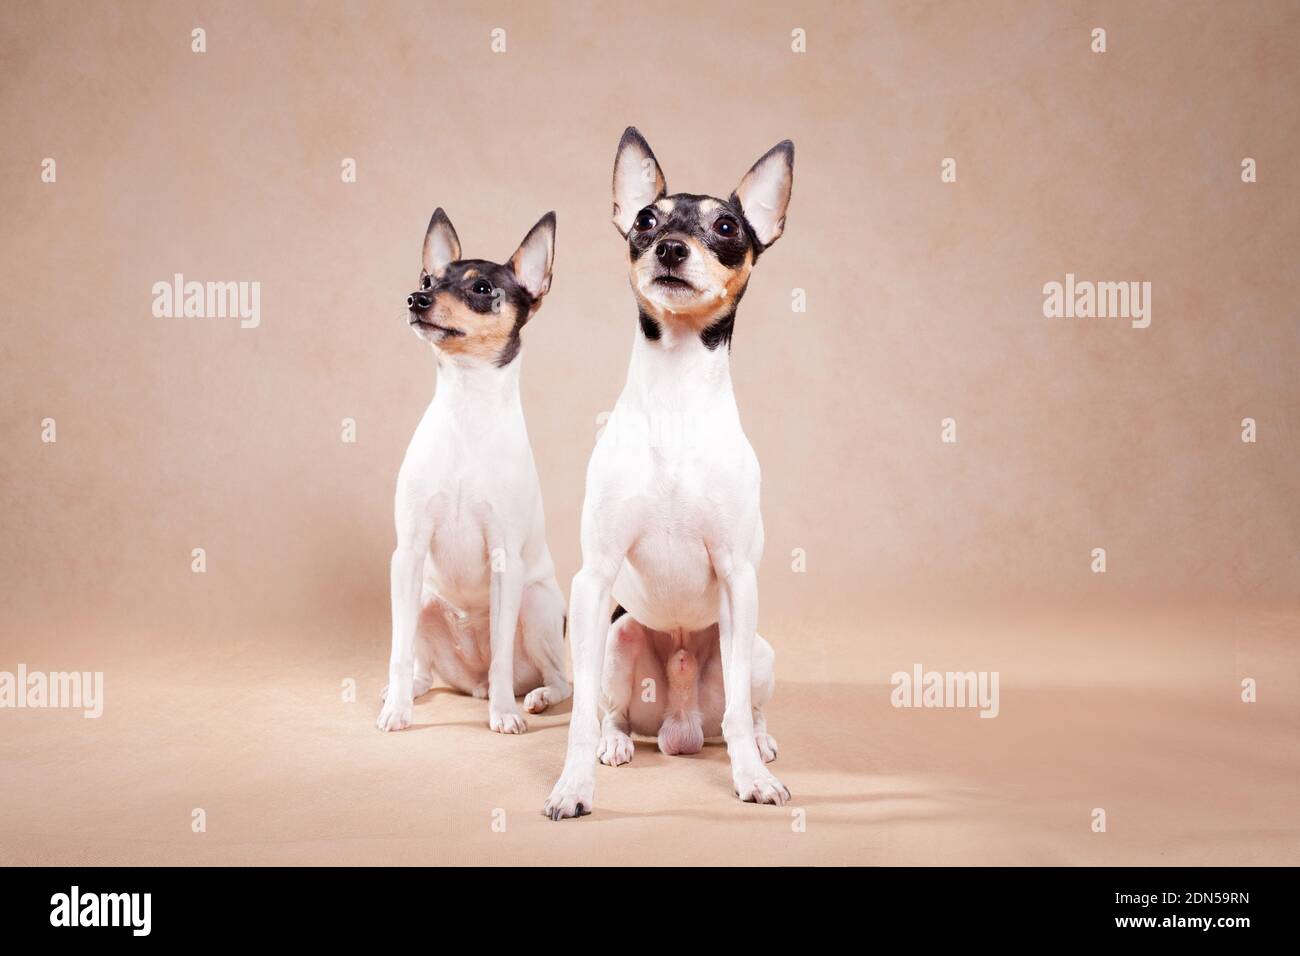 Dos perros de raza el zorro americano de eso a terrier se sienta sobre un fondo beige Foto de stock